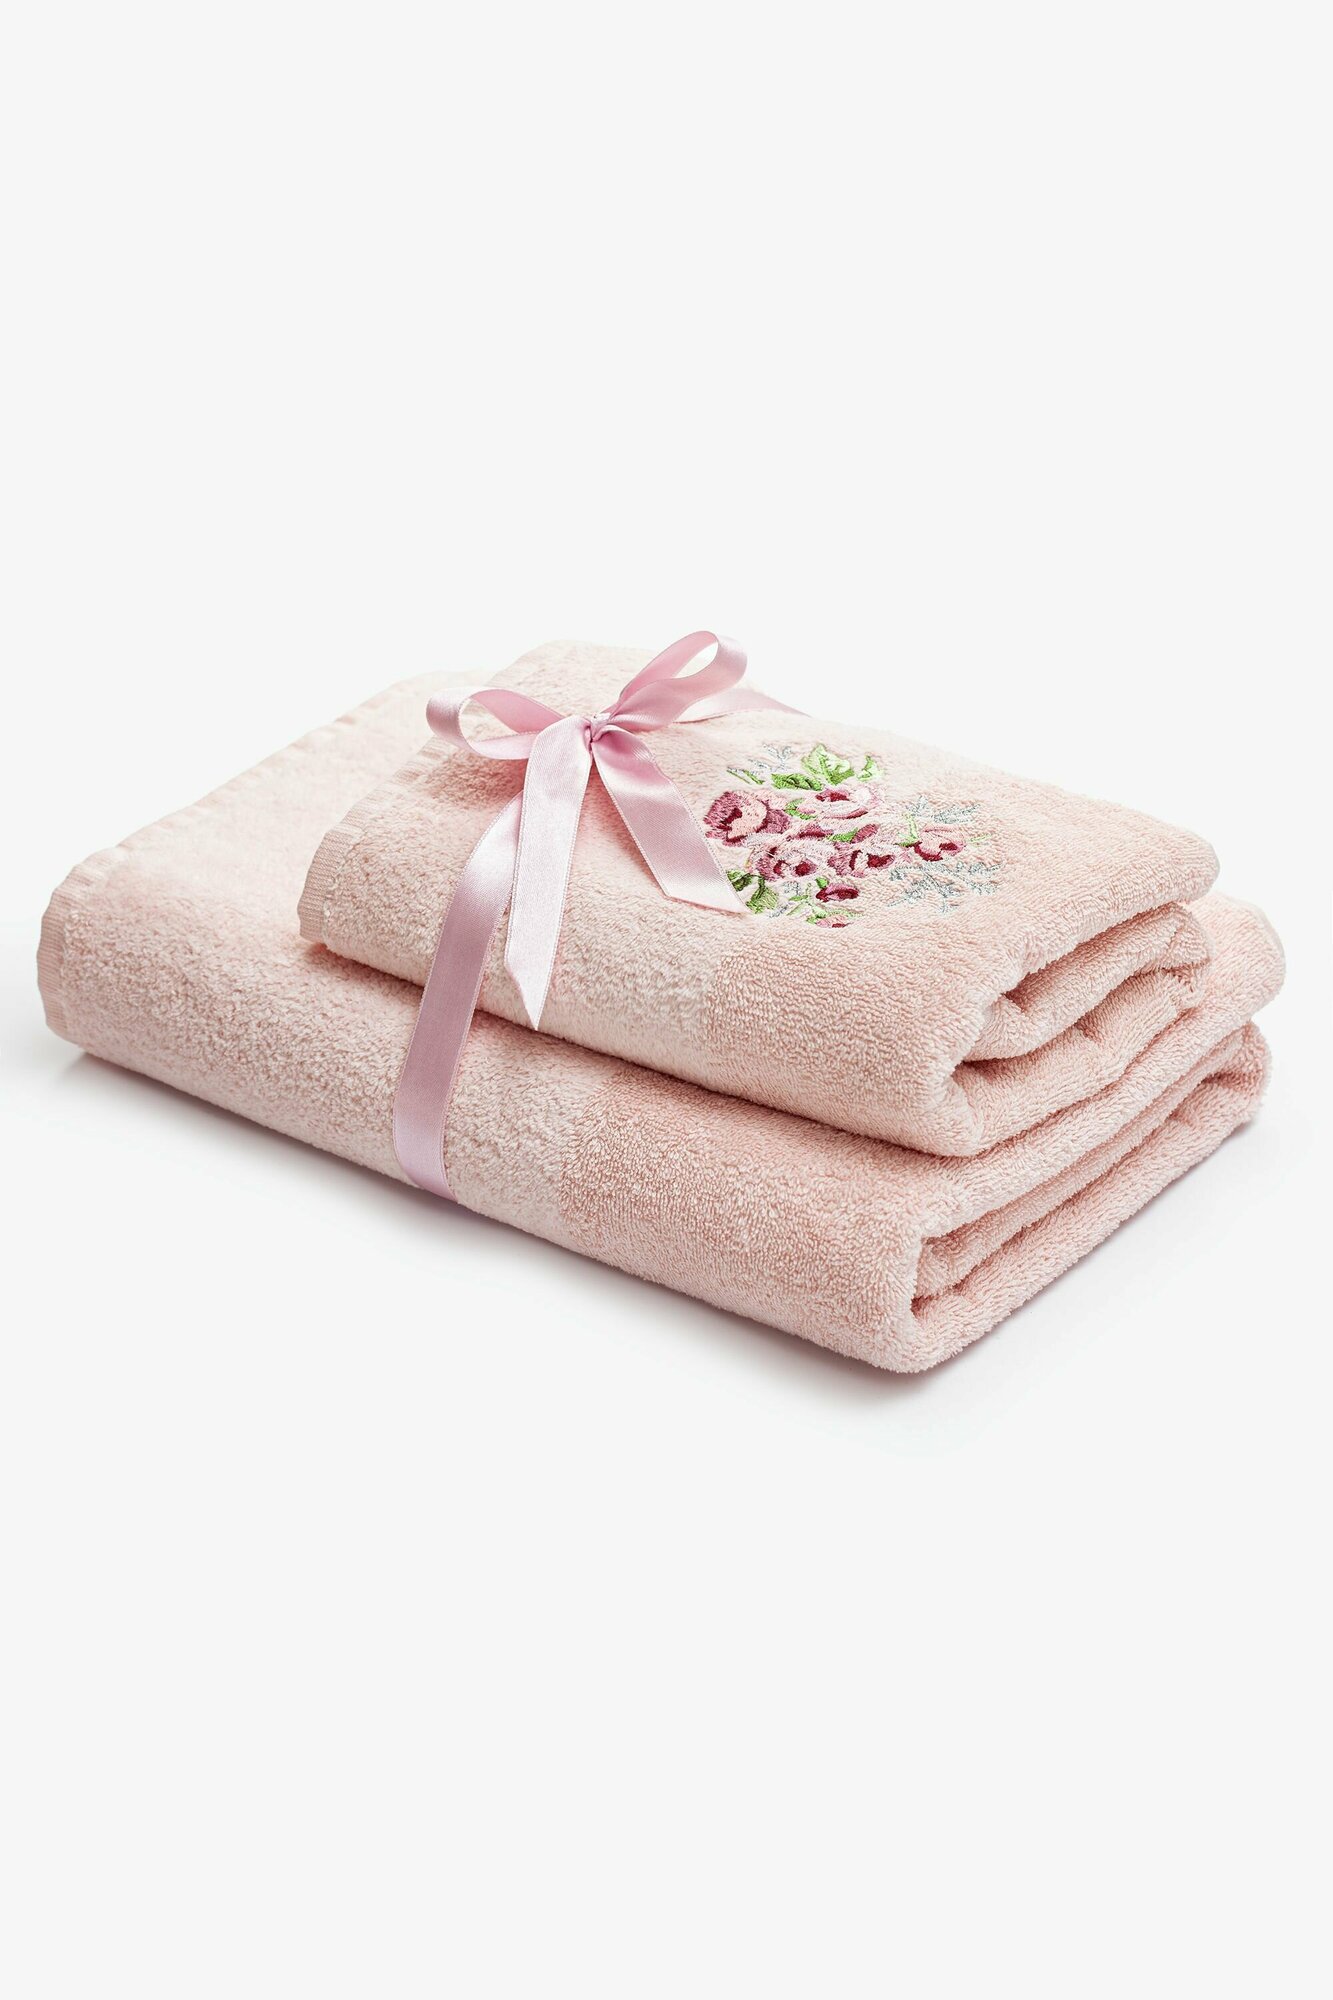 Комплект махровых полотенец с вышивкой